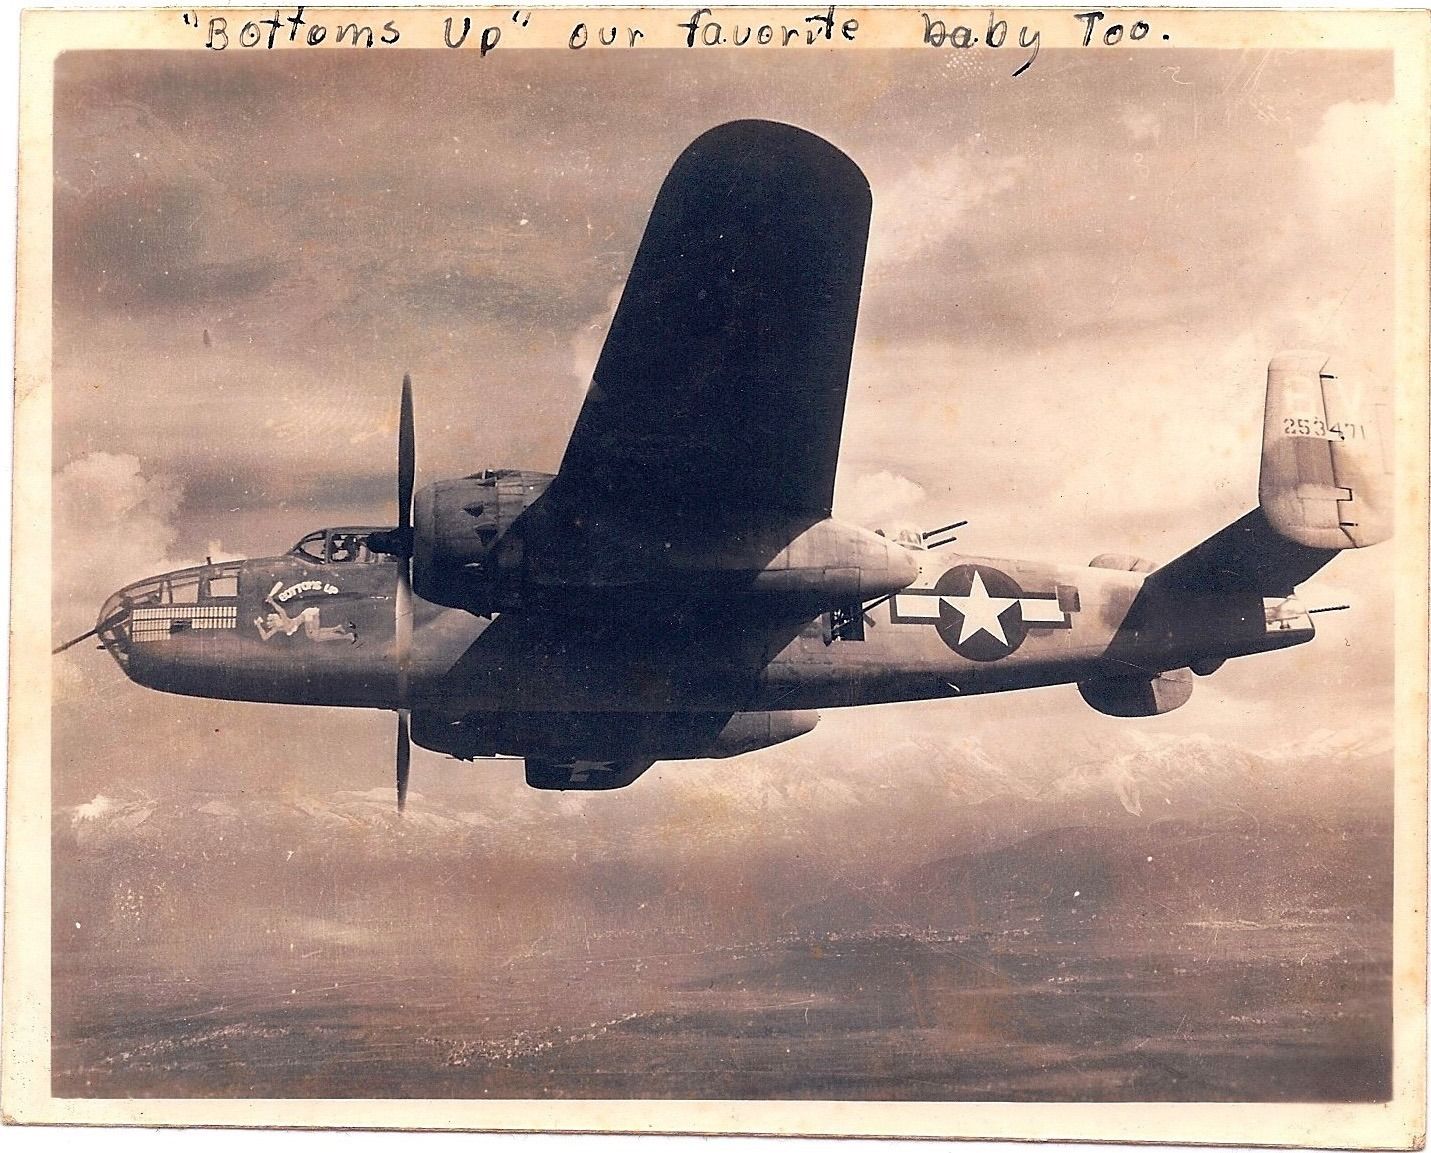 B-25 Hasegawa